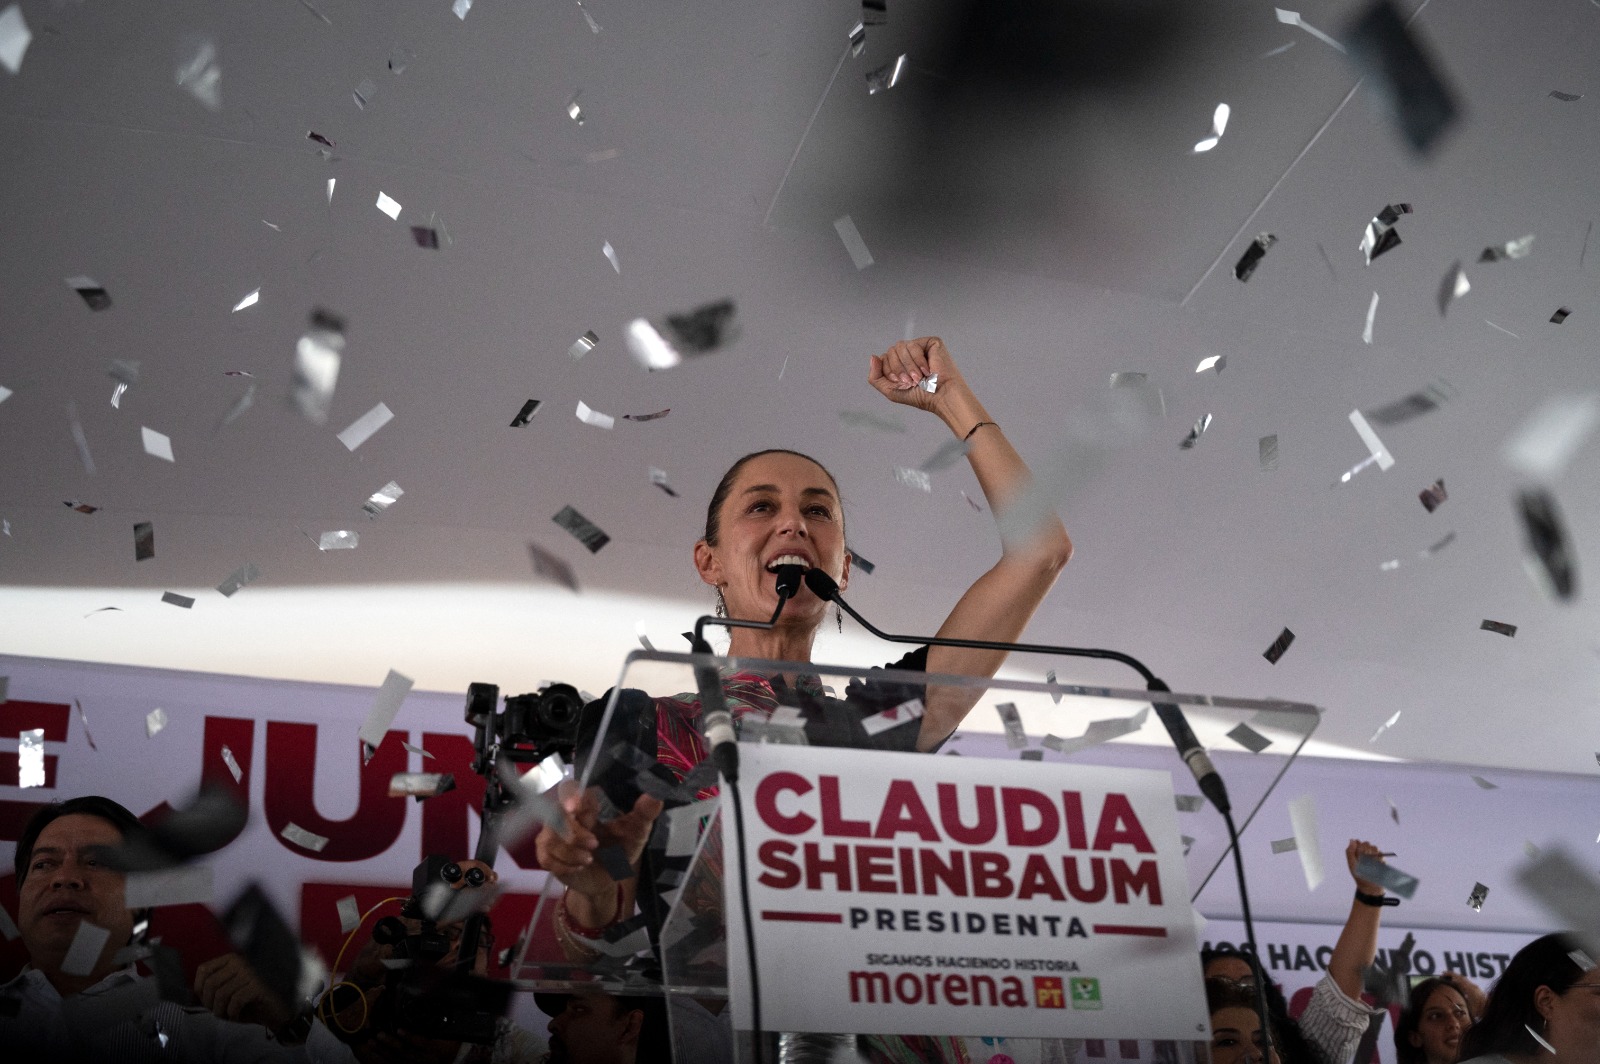 رئيسة بلدية مدينة مكسيكو السابقة ولمرشحة الرئاسية الحالية كلوديا شينباوم تلوح لأنصارها خلال تجمع انتخابي في مكسيكو. 16 مايو 2024